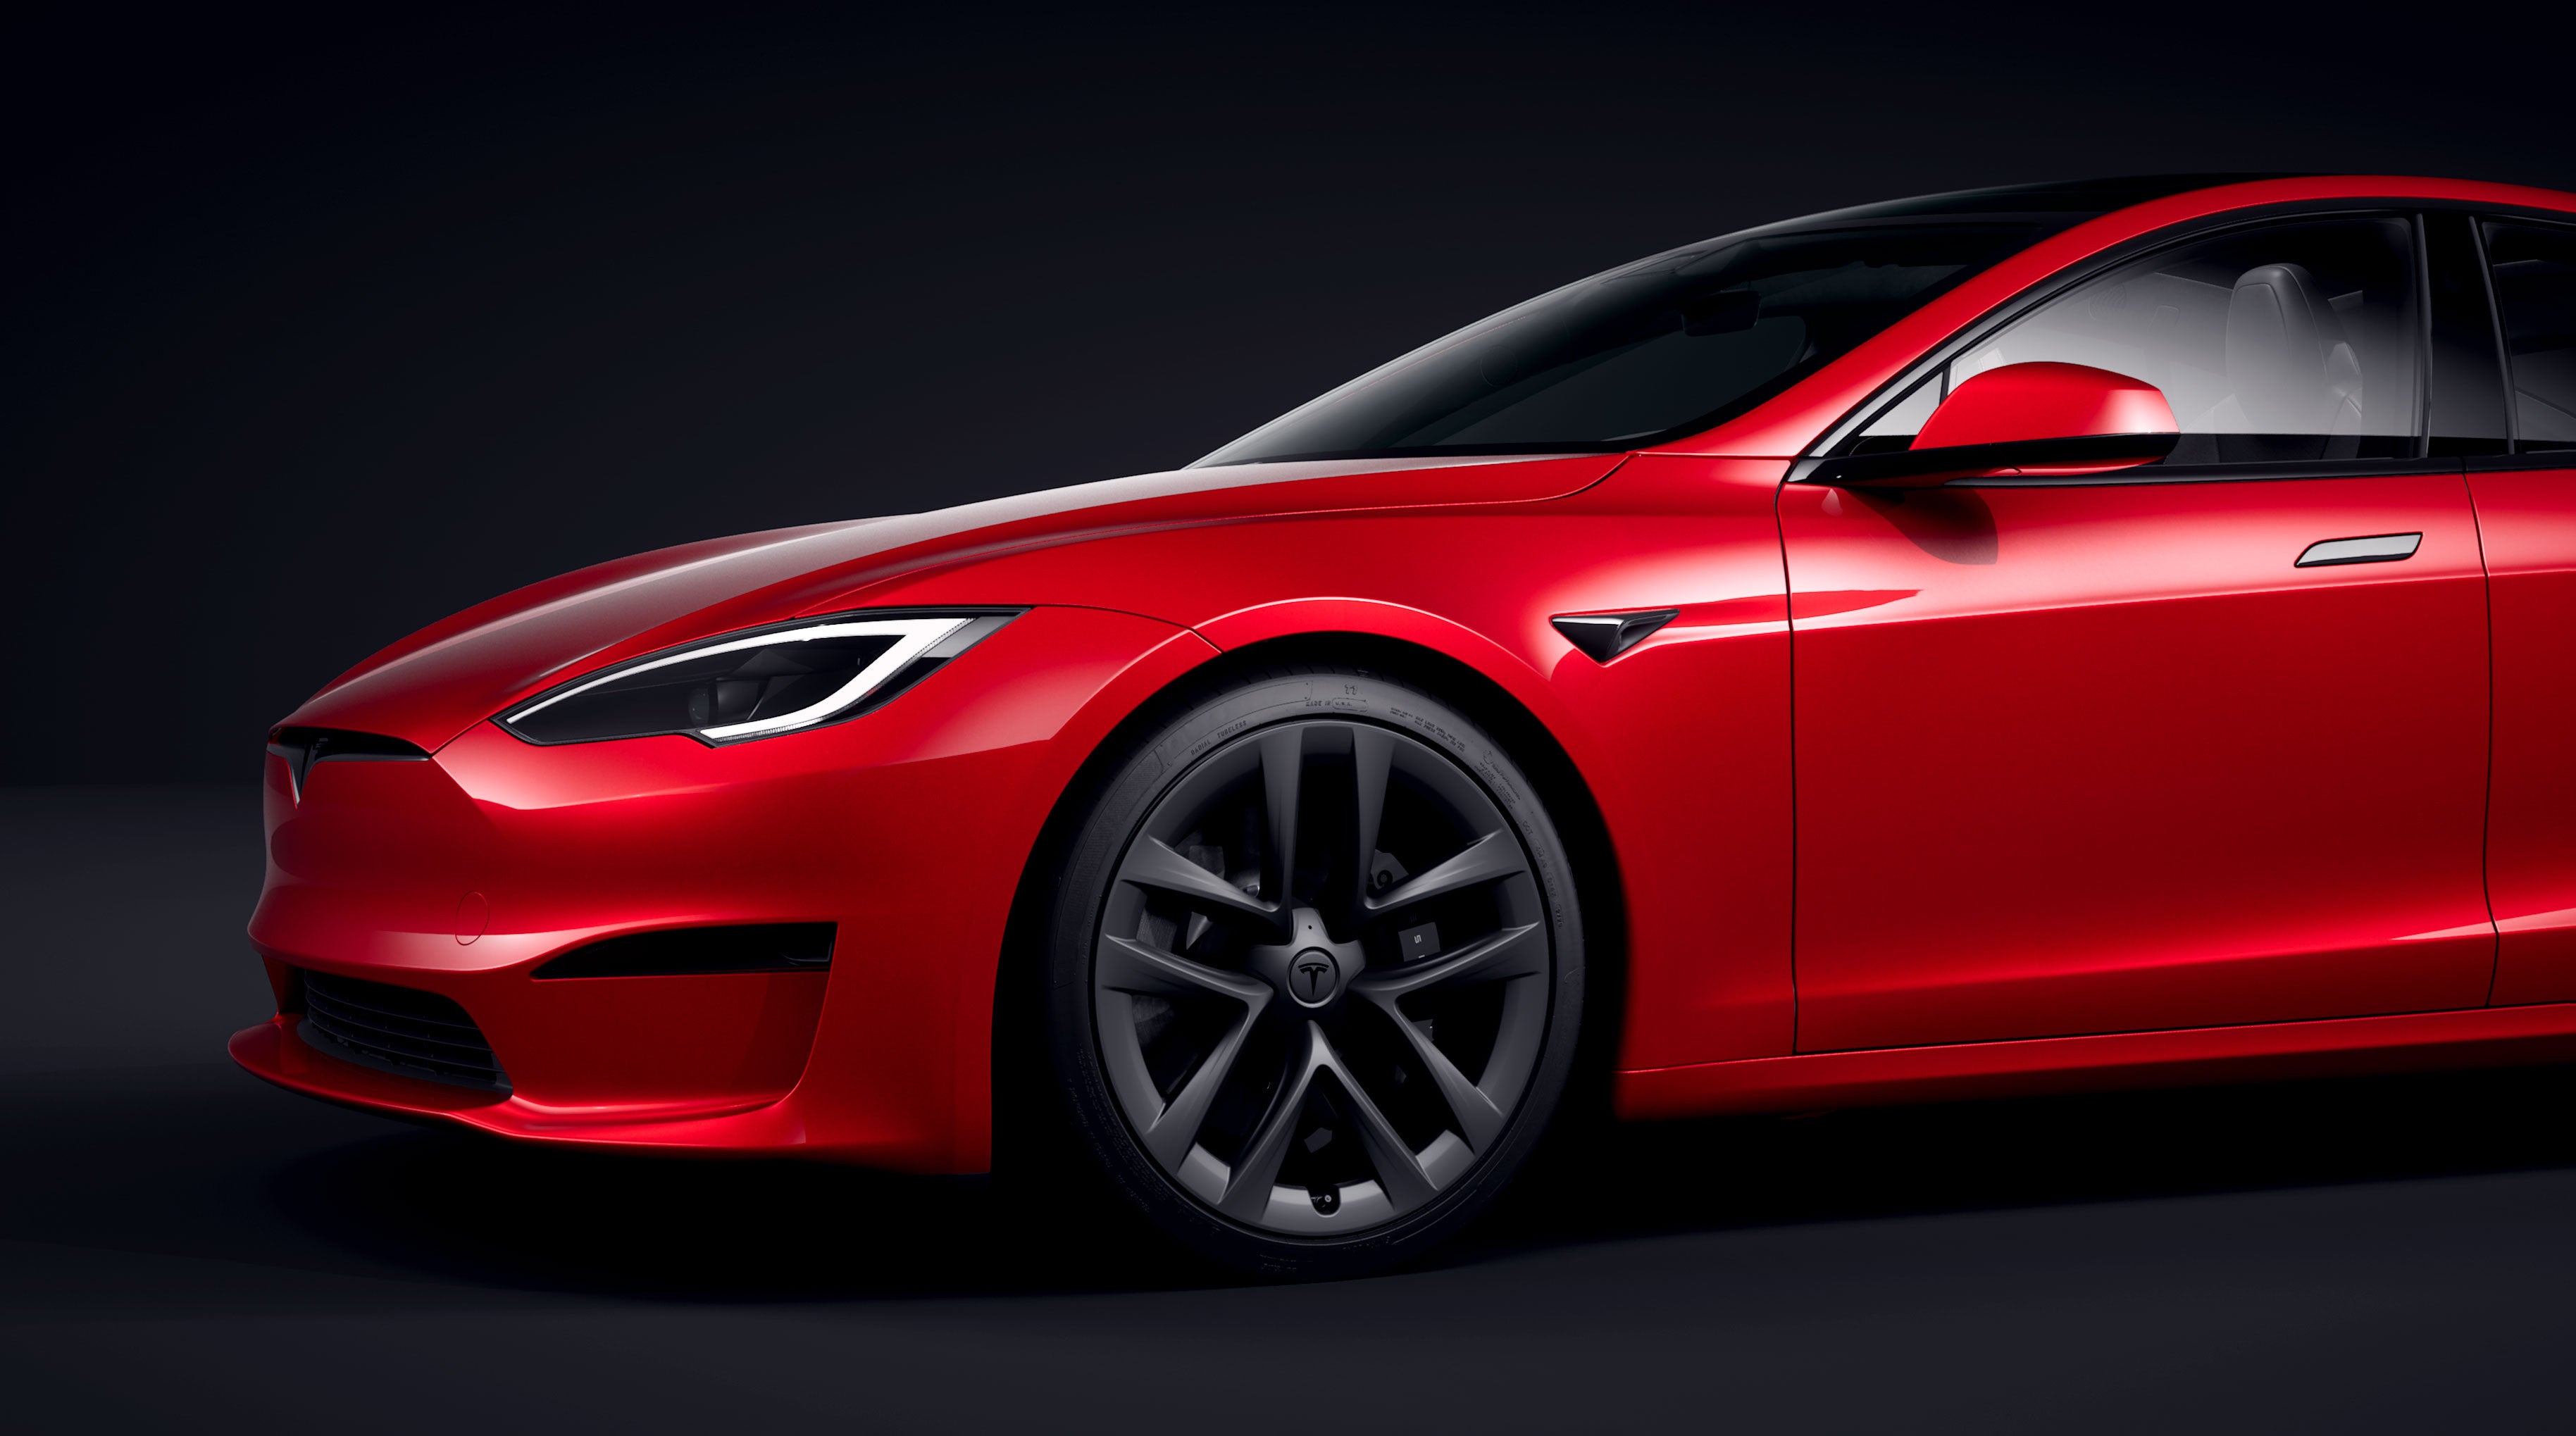 Populært tilbehør og udstyr i høj kvalitet til alle Tesla modeller – EVgear